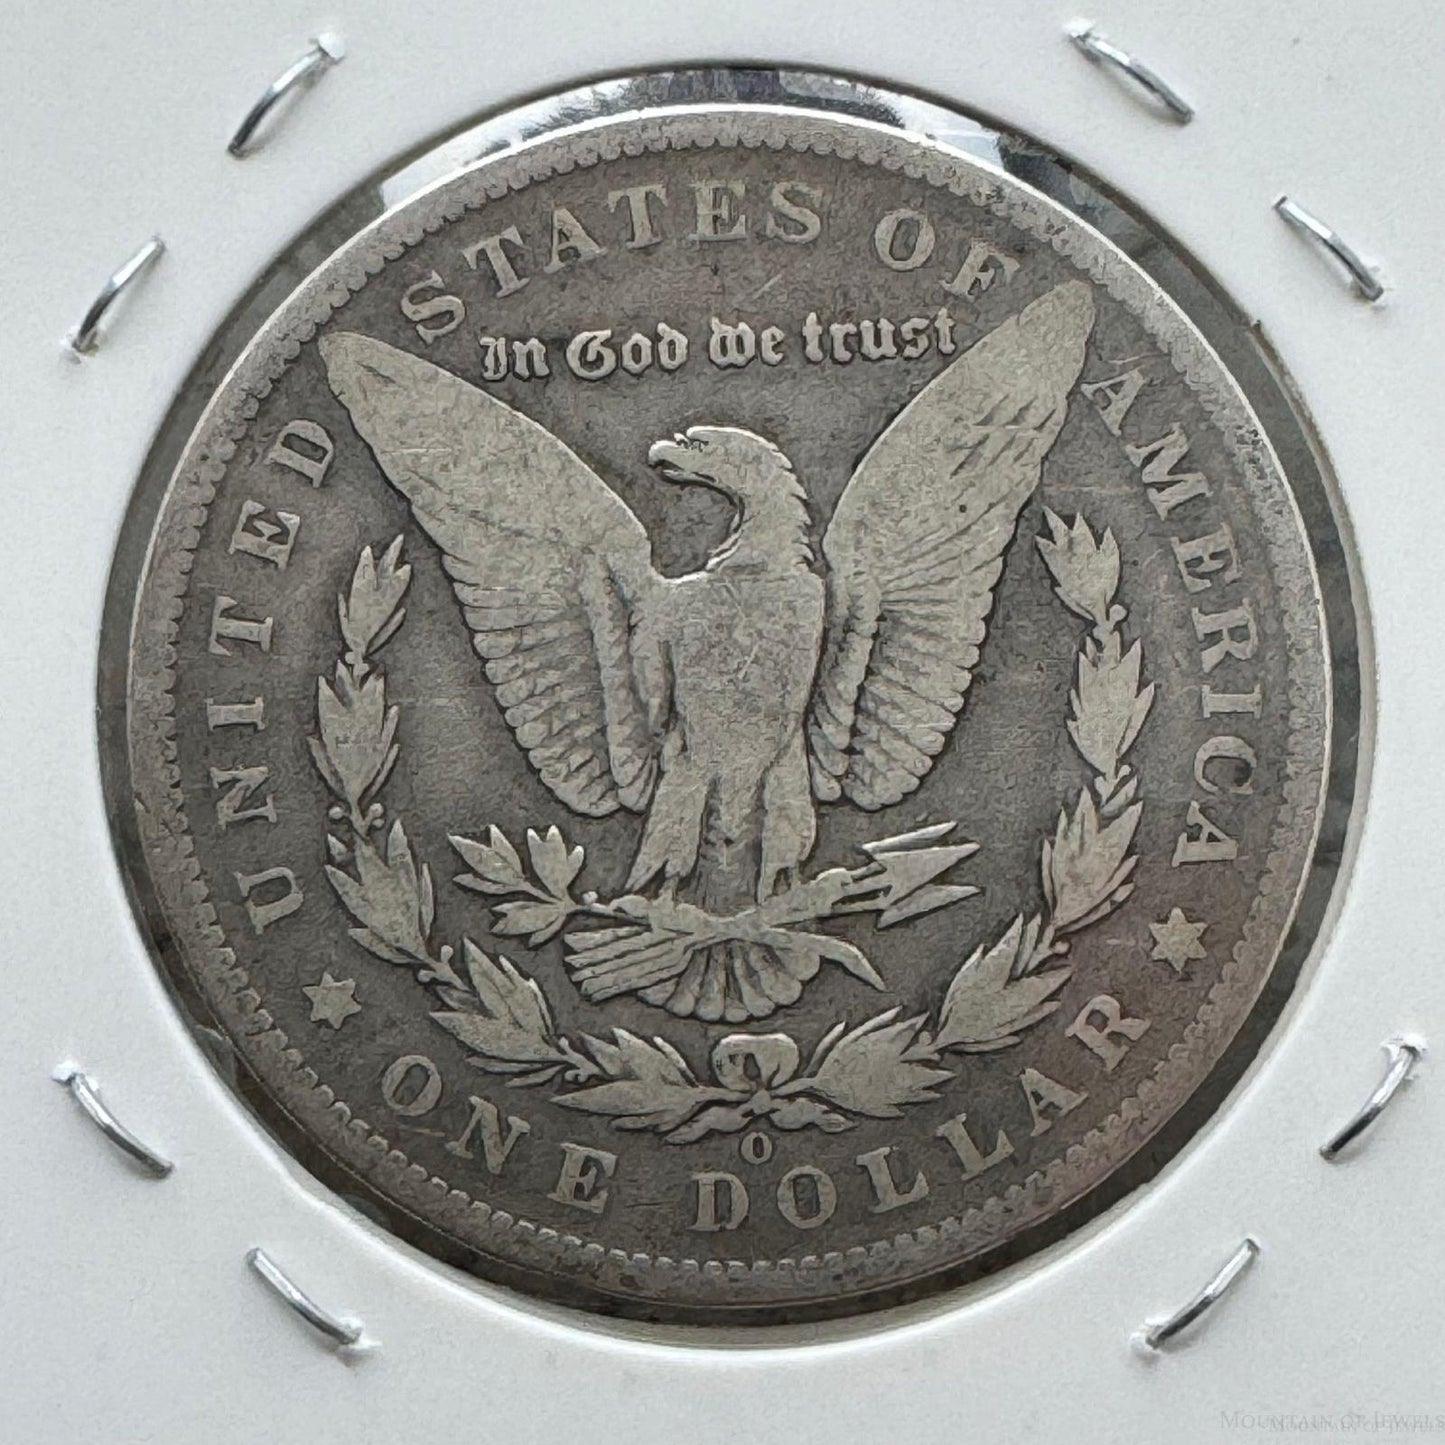 1891-O US 90% Morgan Silver Dollar VG-F #51424-8GH